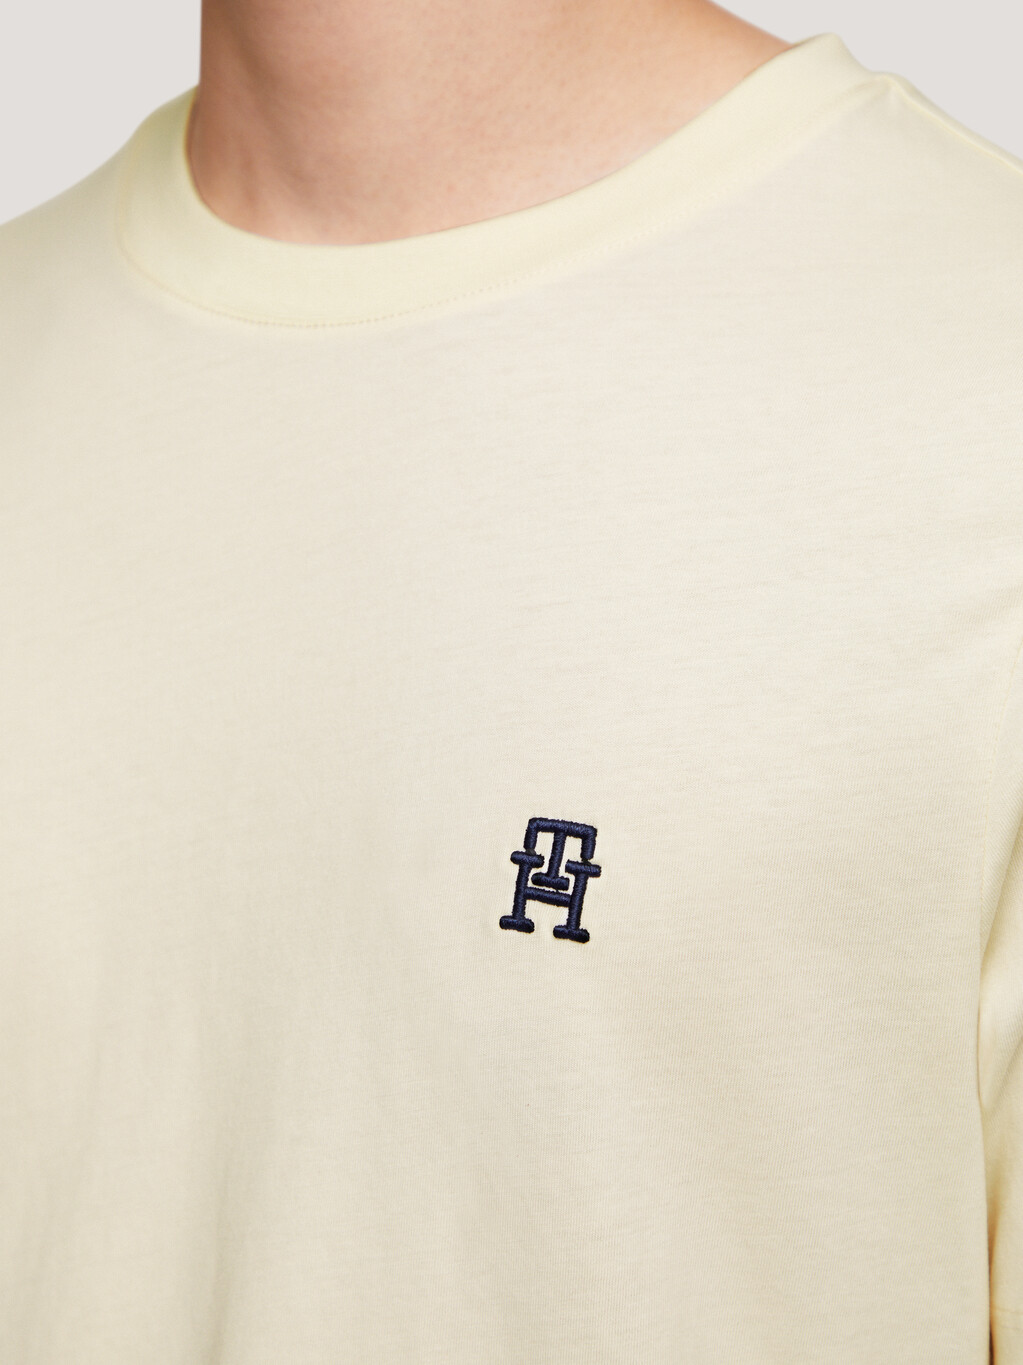 TH Monogram 標誌 T 恤, Calico, hi-res